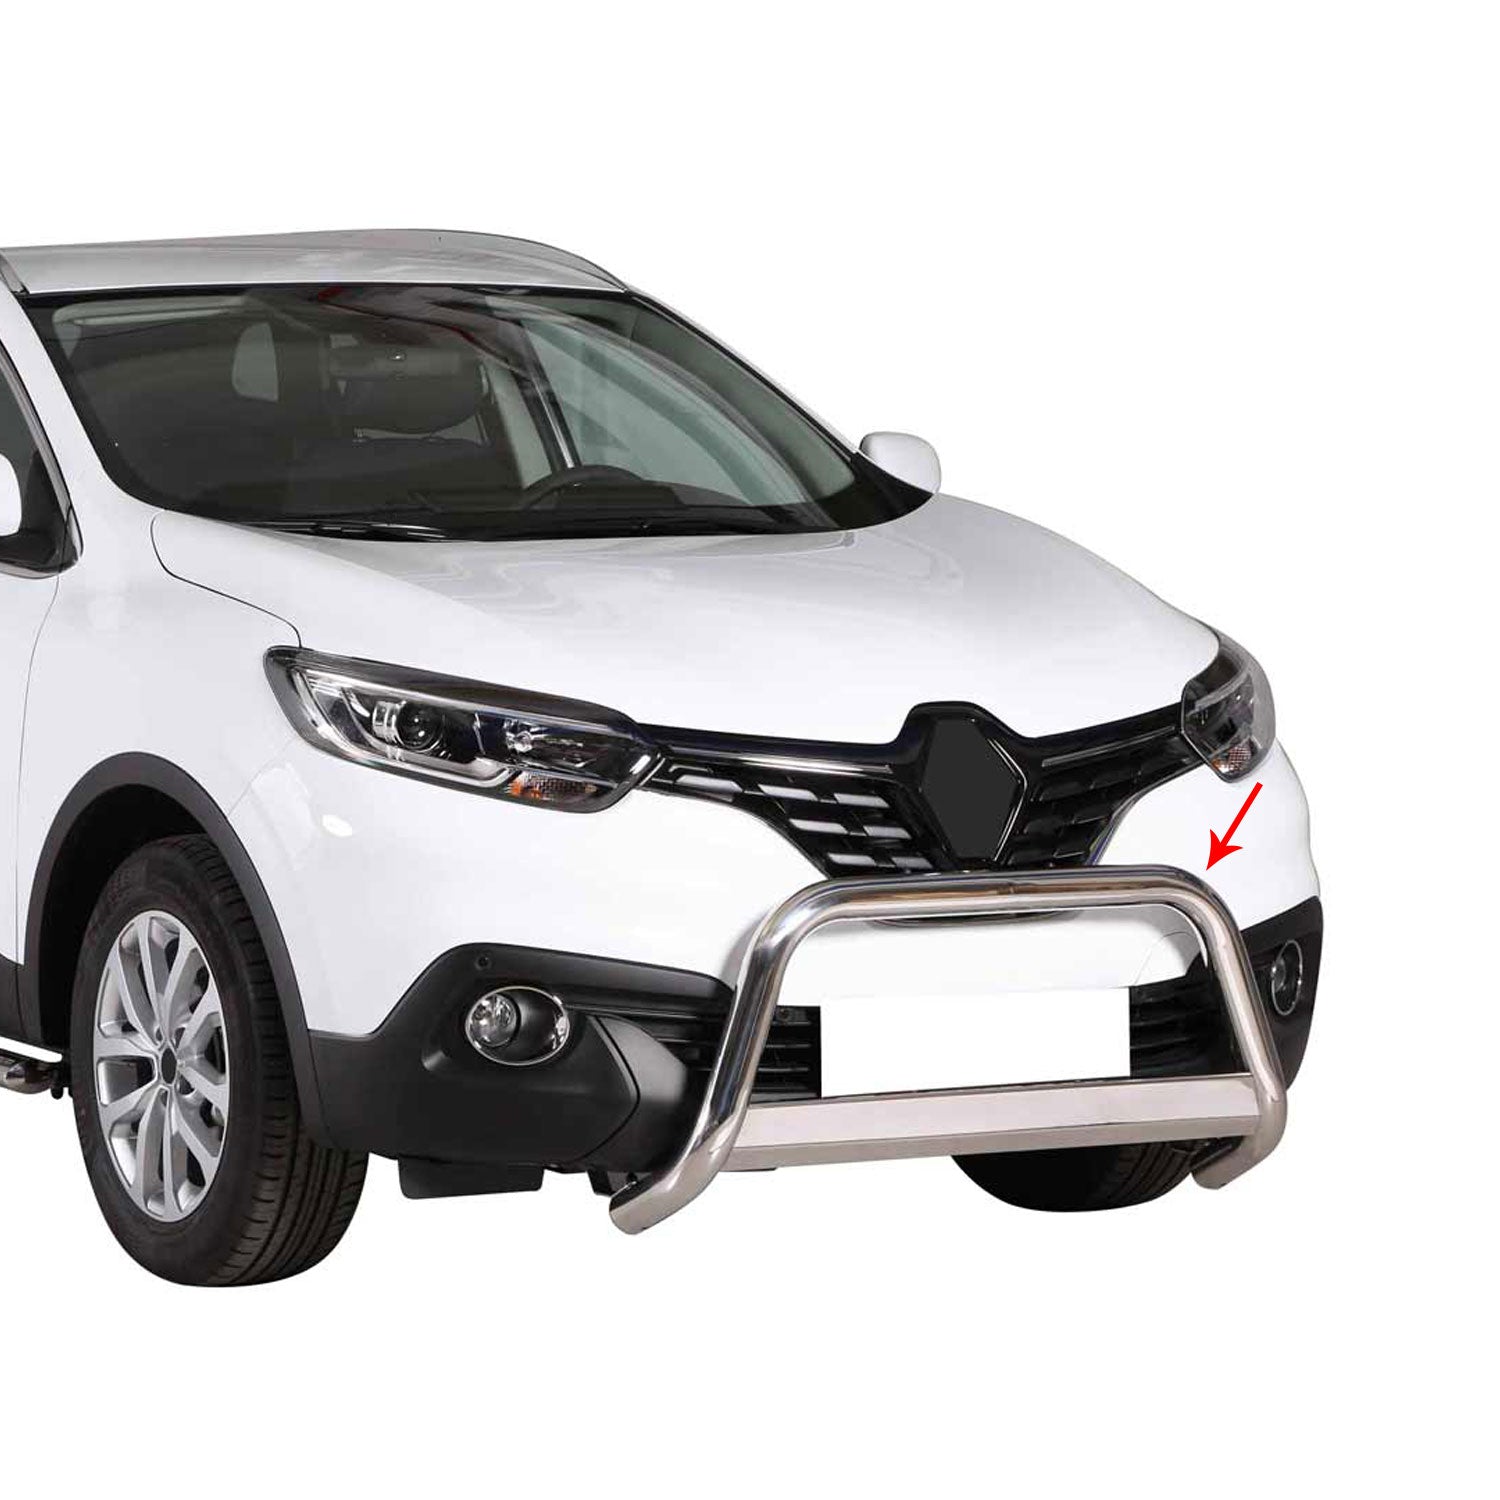 Edelstahl Frontbügel Frontschutzbügel für Renault Kadjar 2015-2022 Gra